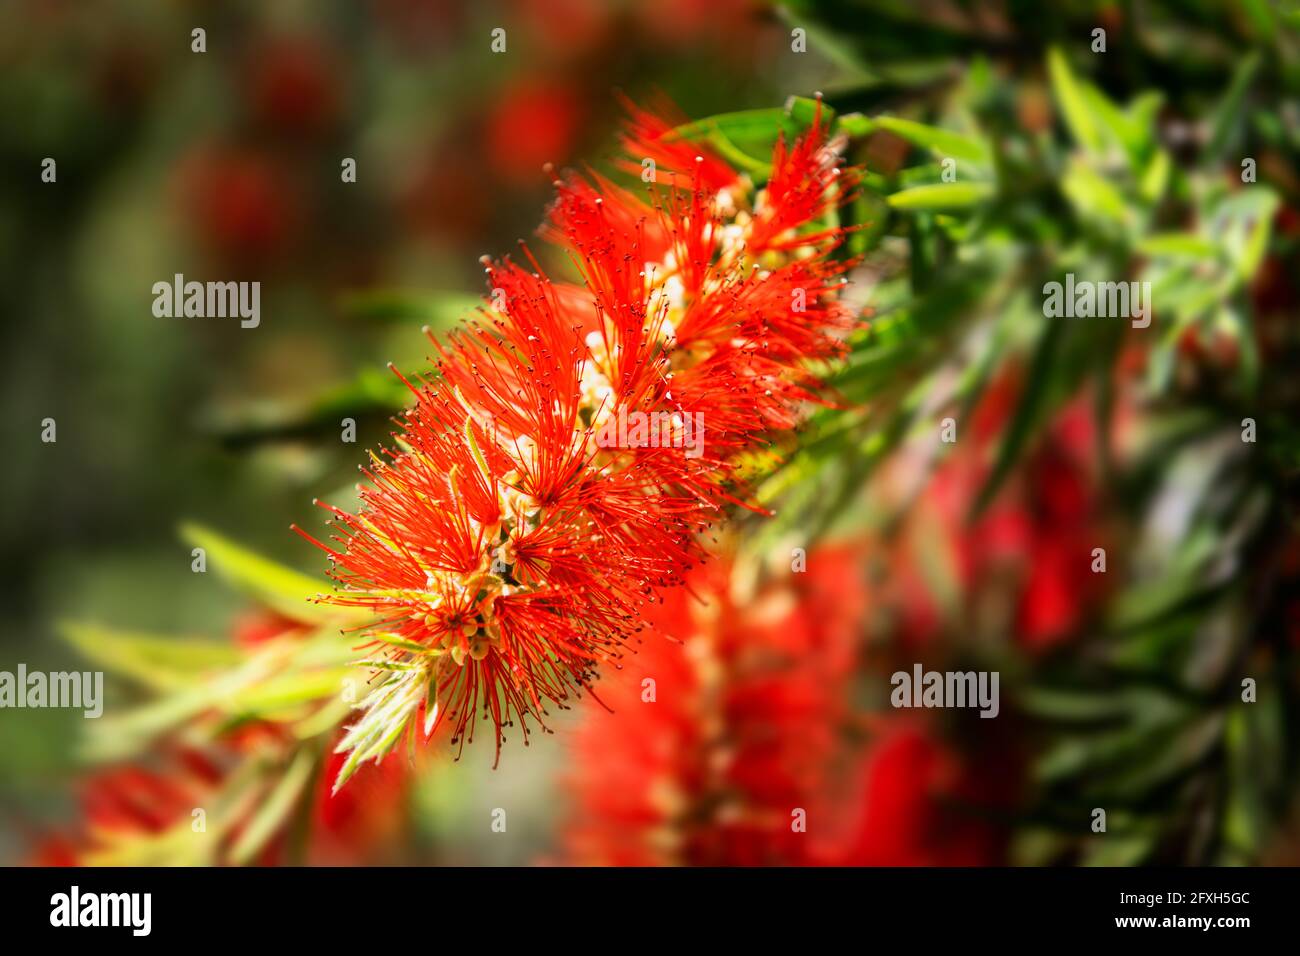 Magnifique fleur rouge d'un pinceau de fleur de bottlebrush australien. Banque D'Images